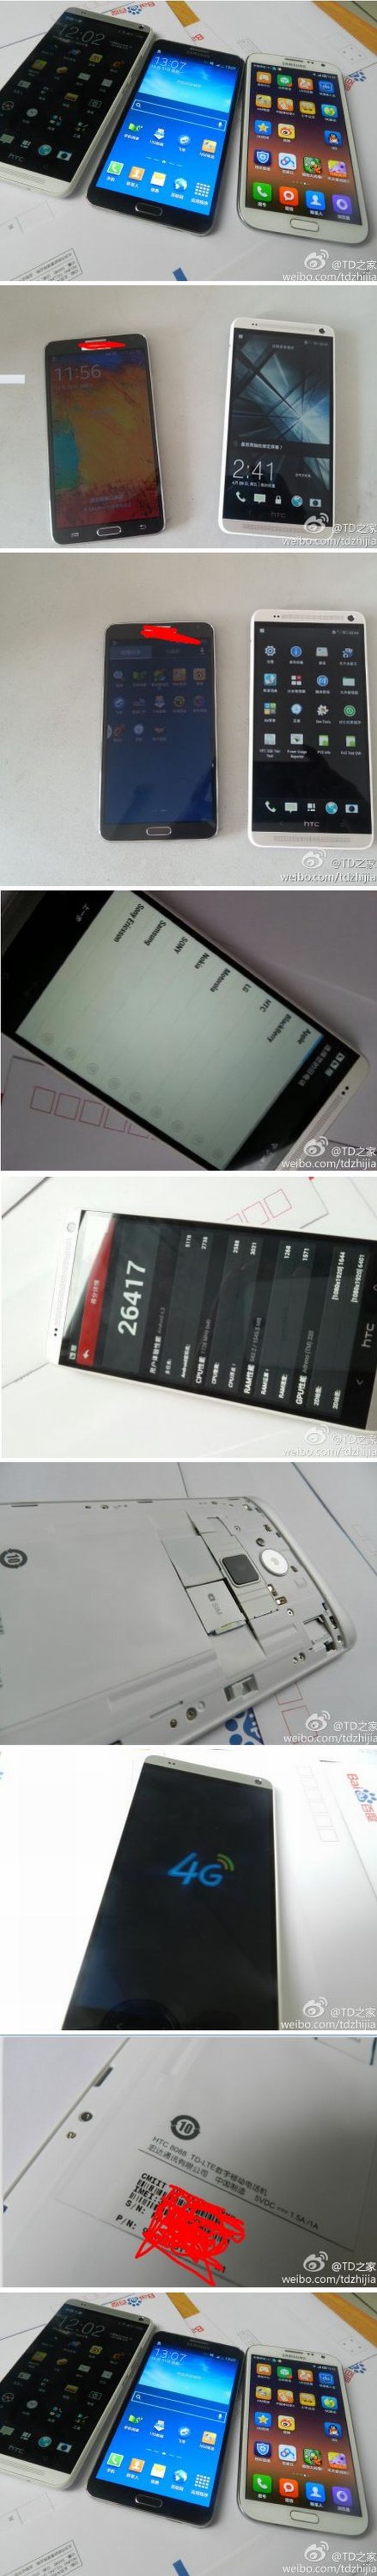 Friss HTC One Max képek